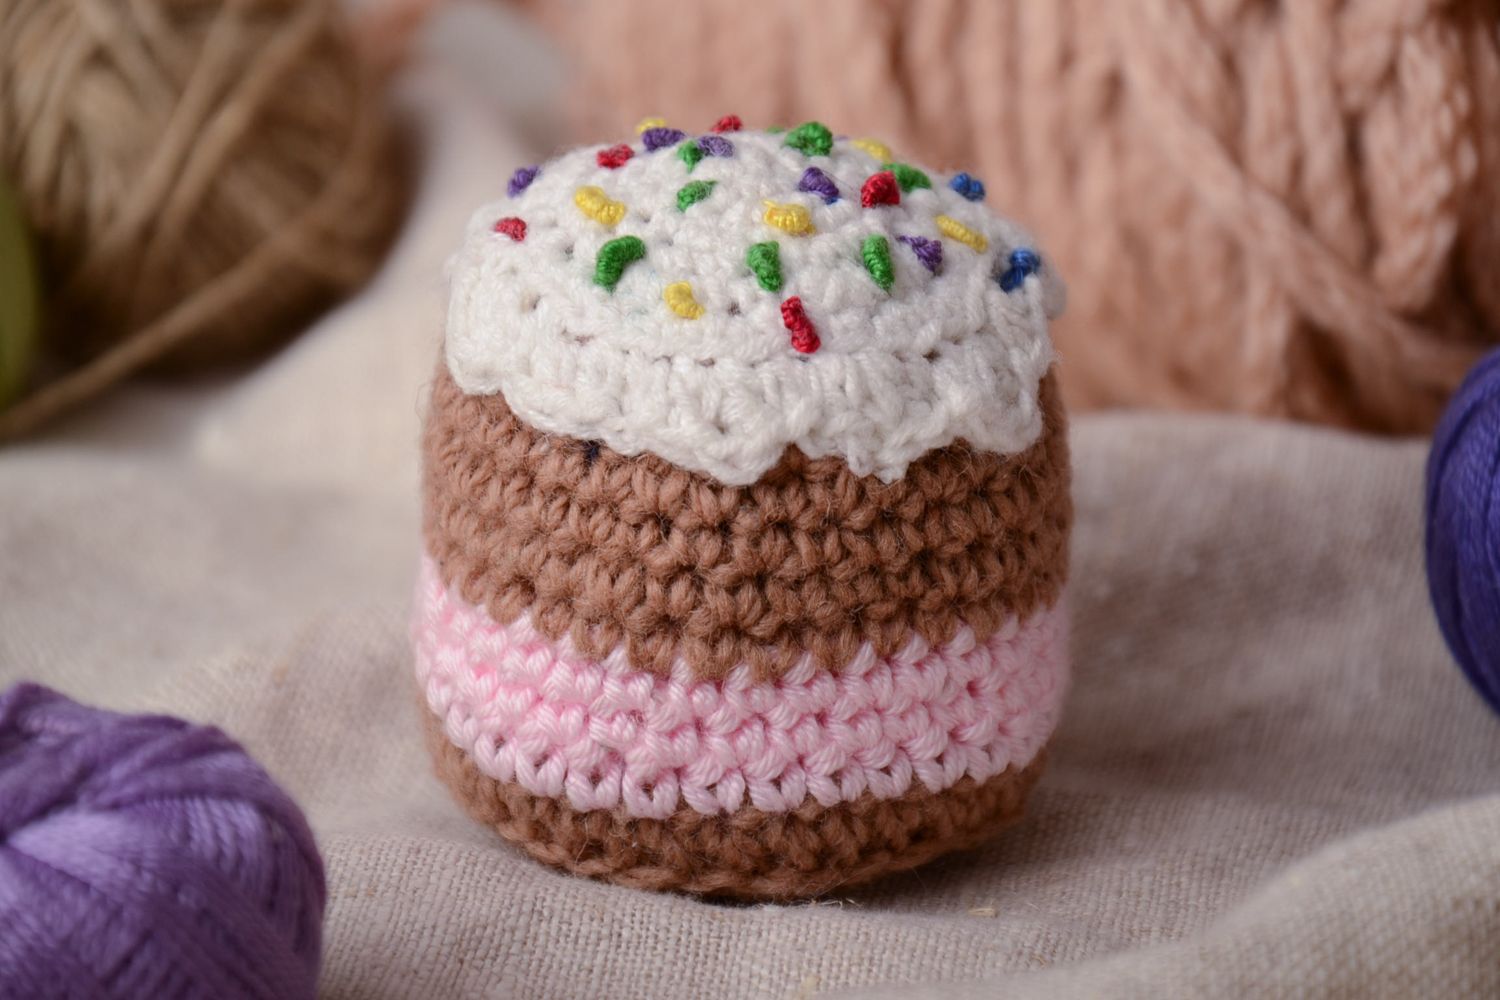 Soft crochet toy cake photo 1